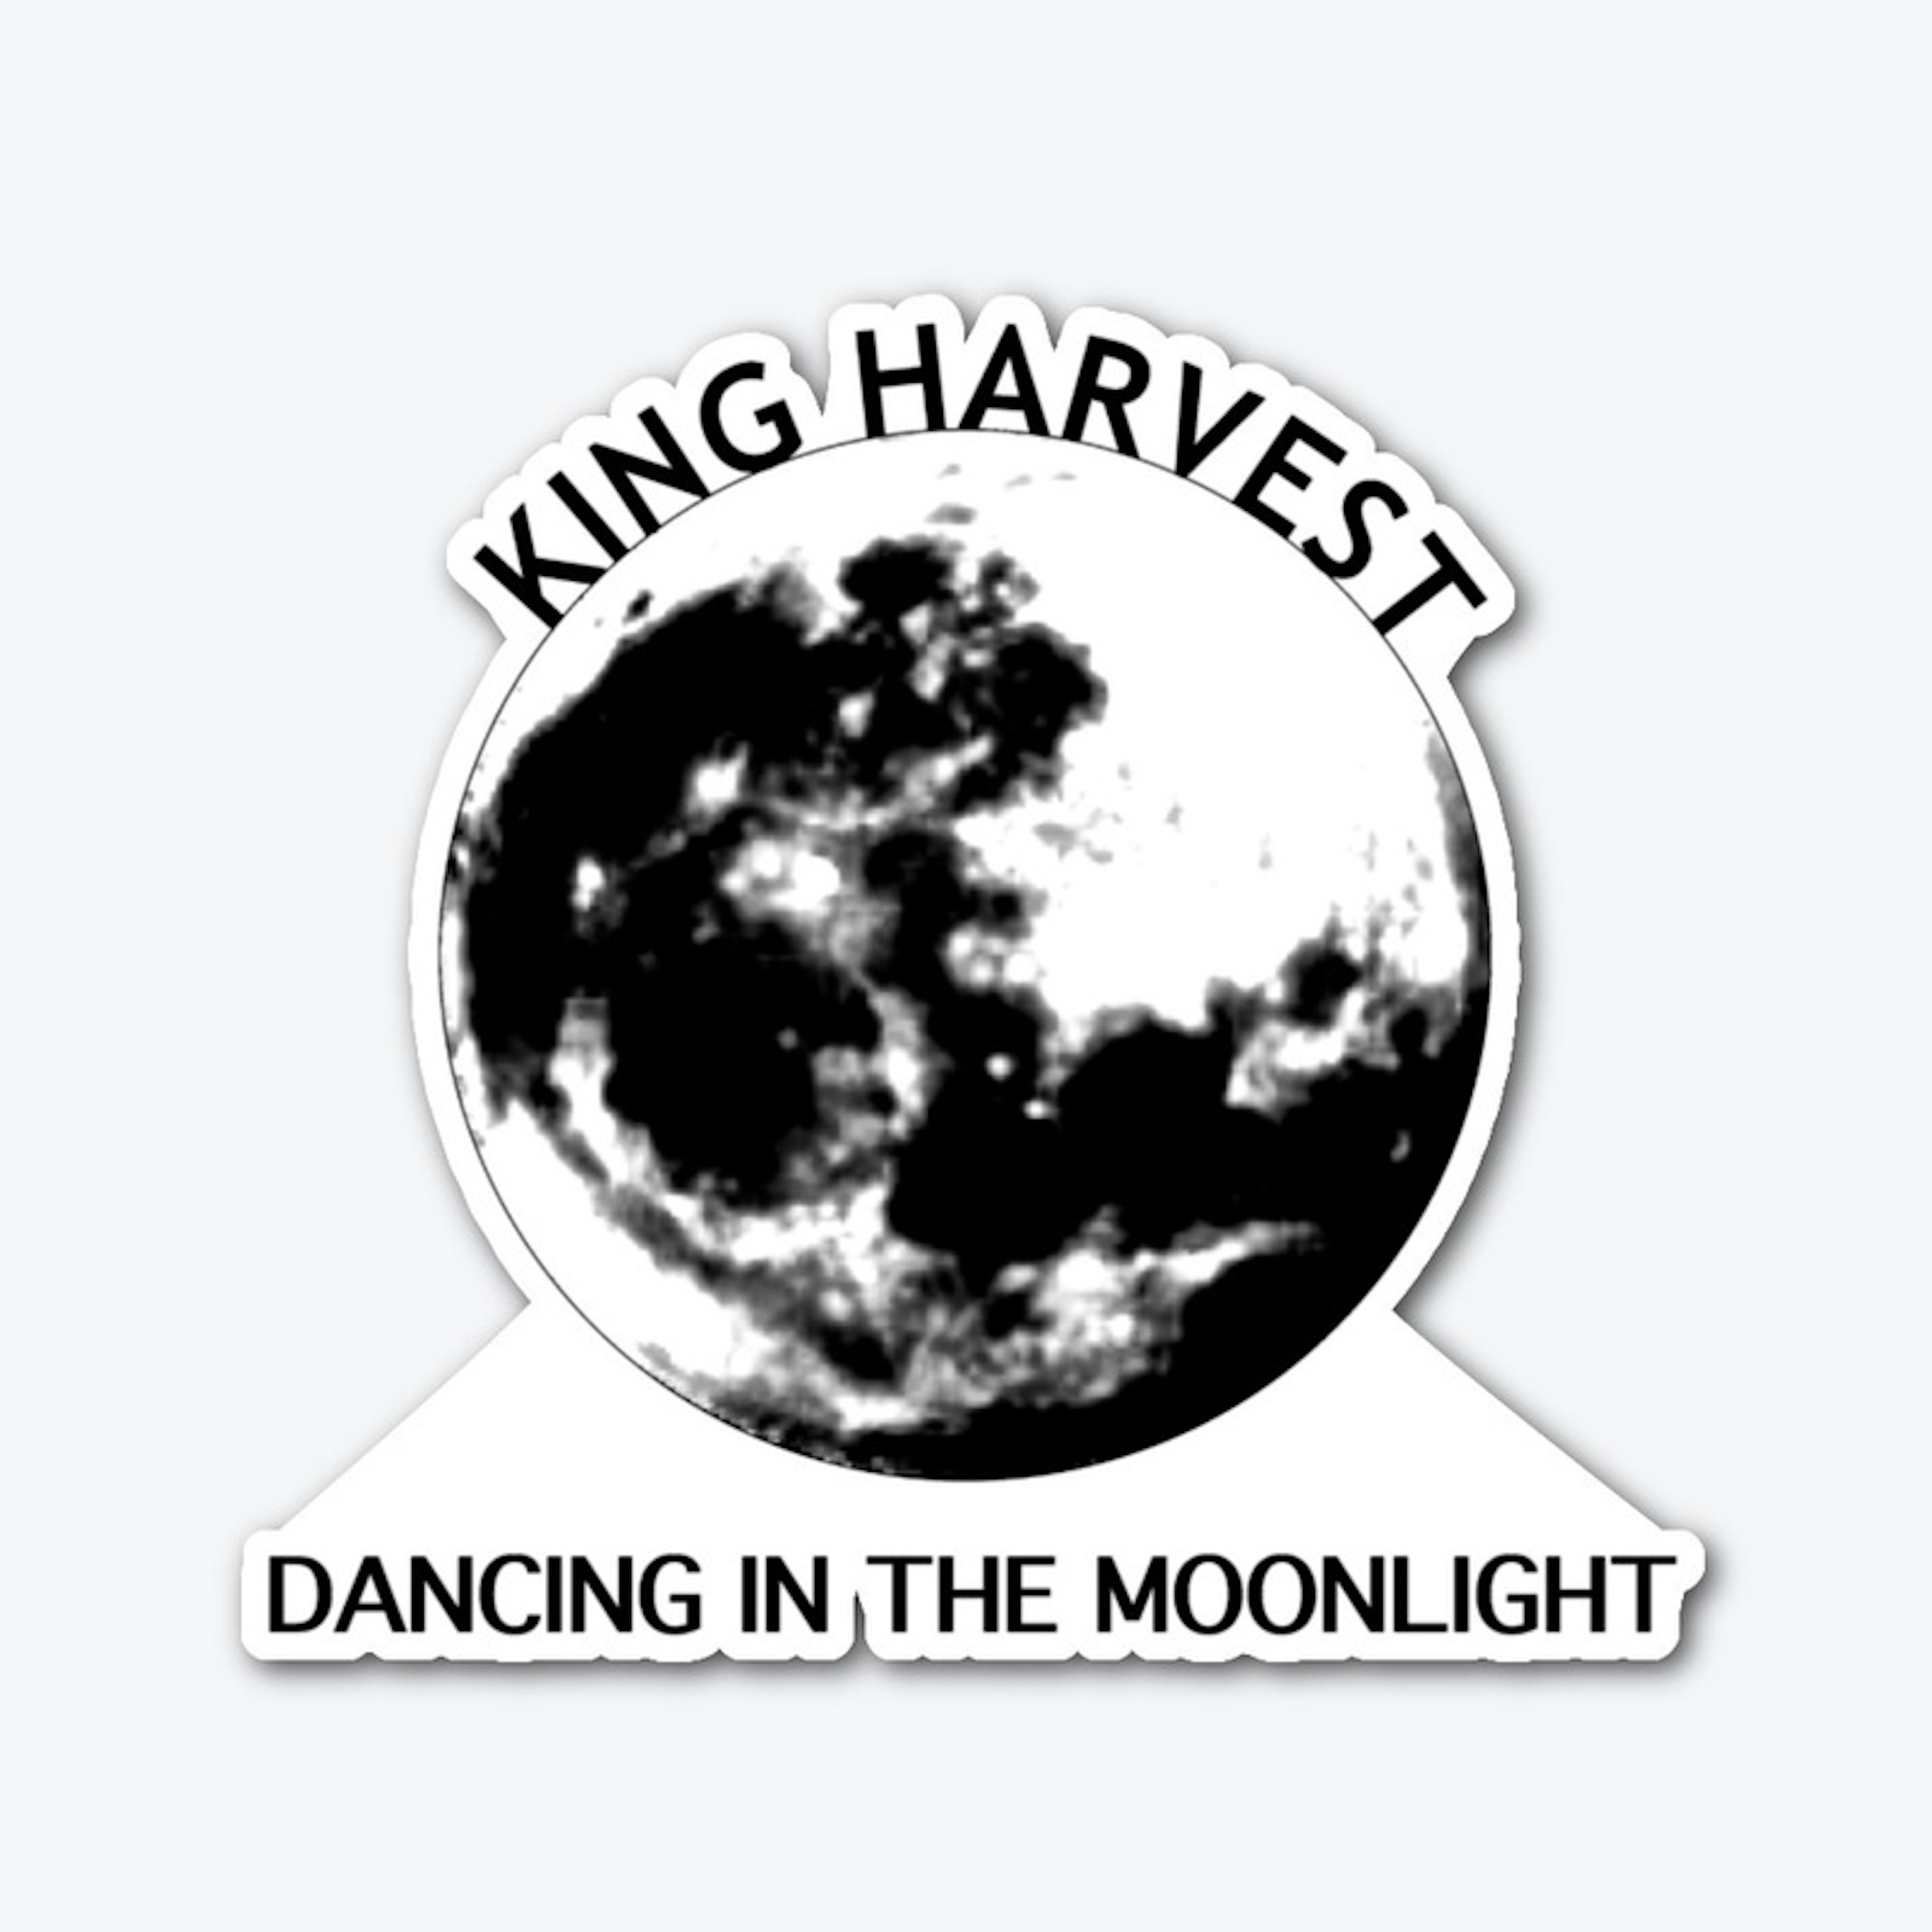 "Dancing in the Moonlight"